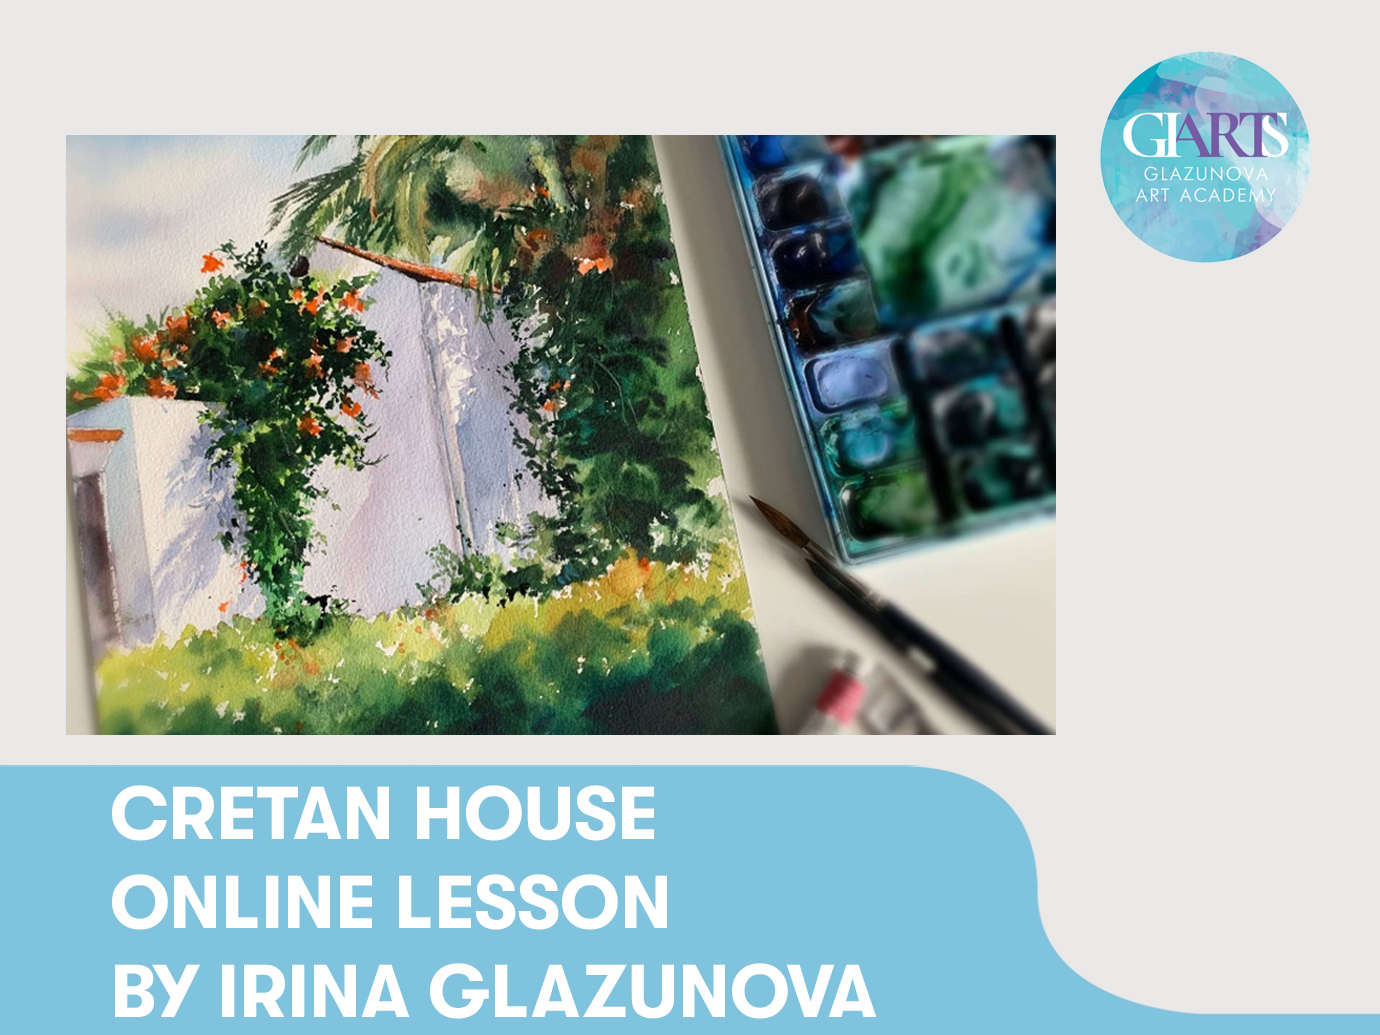 Cretan House. Online lesson by Irina Glazunova